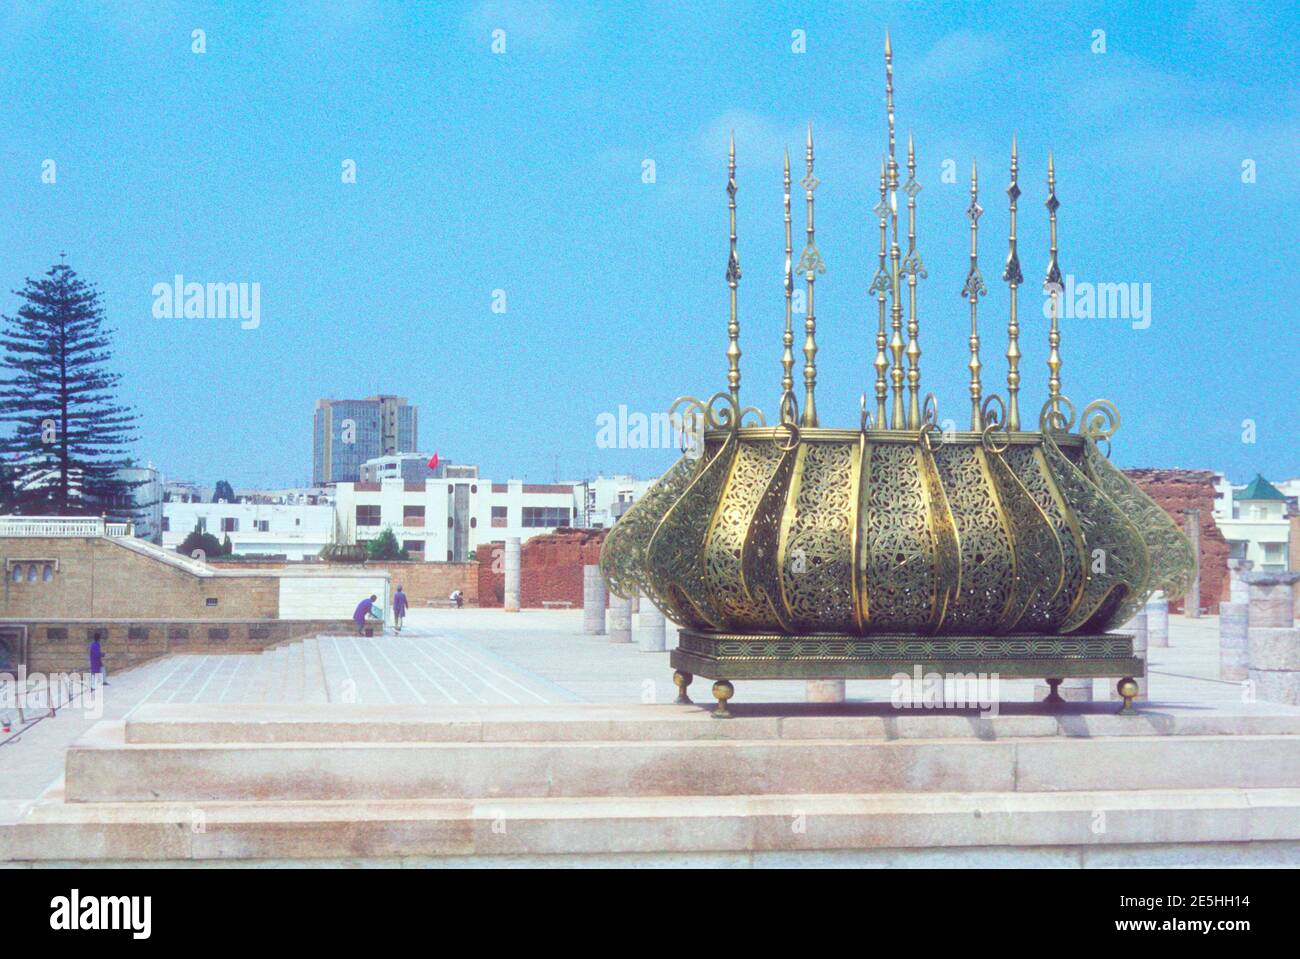 1984 Maroc Rabat - détail du toit doré sur le mausolée du tombeau Mohammed V, le mausolée de Mohammed V est un mausolée situé de l'autre côté de la Tour Hassan, sur l'esplanade Yacoub al-Mansour à Rabat, Maroc, Rabat, Maroc, Afrique du Nord Banque D'Images